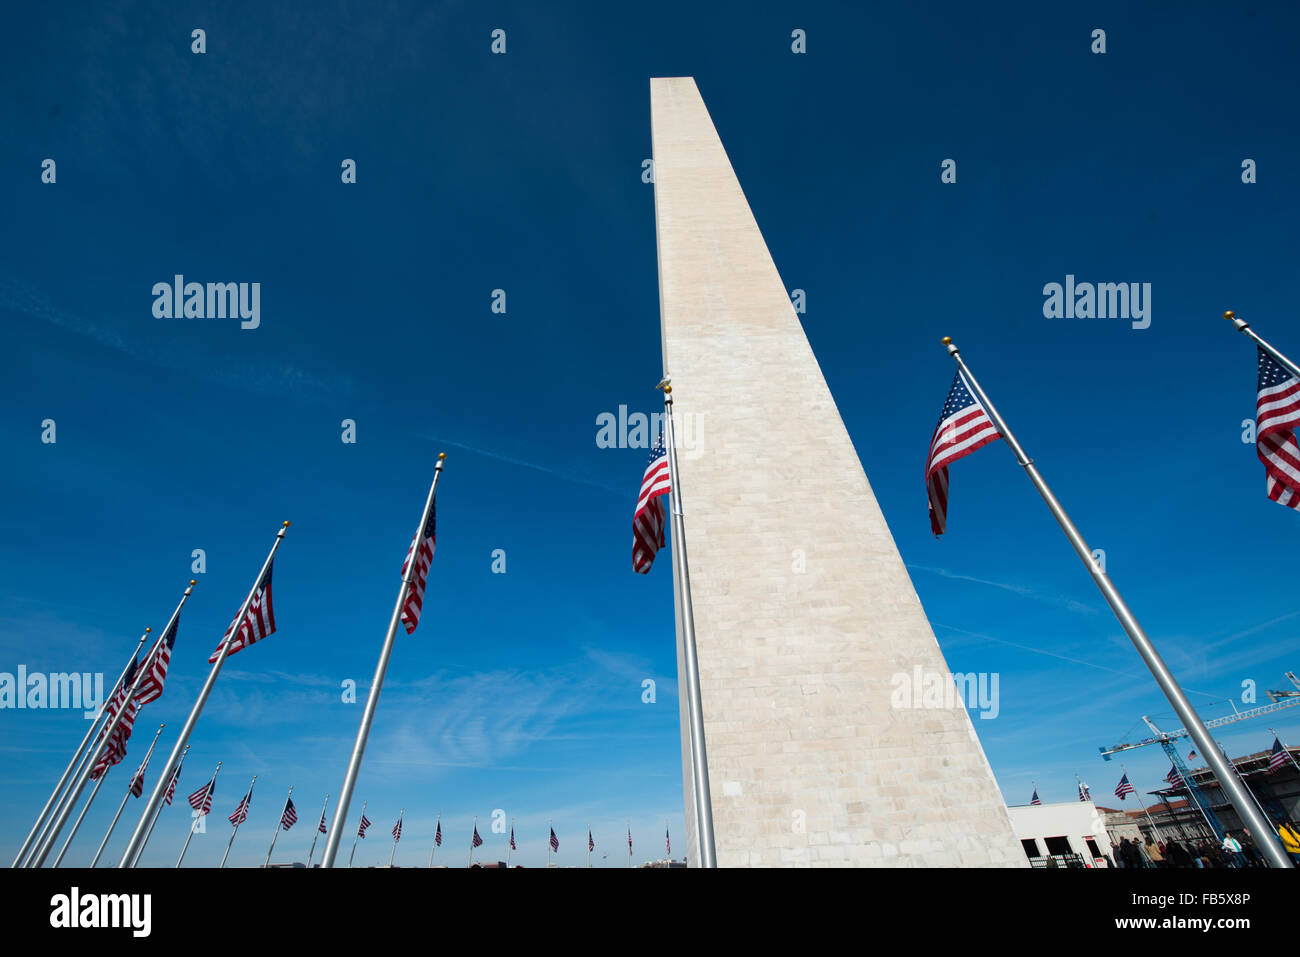 WASHINGTON DC, Stati Uniti d'America - costruito in onore di George Washington, il primo presidente del paese, il 555-piede obelisco in marmo towers over Washington DC e sorge nel centro del National Mall. Foto Stock